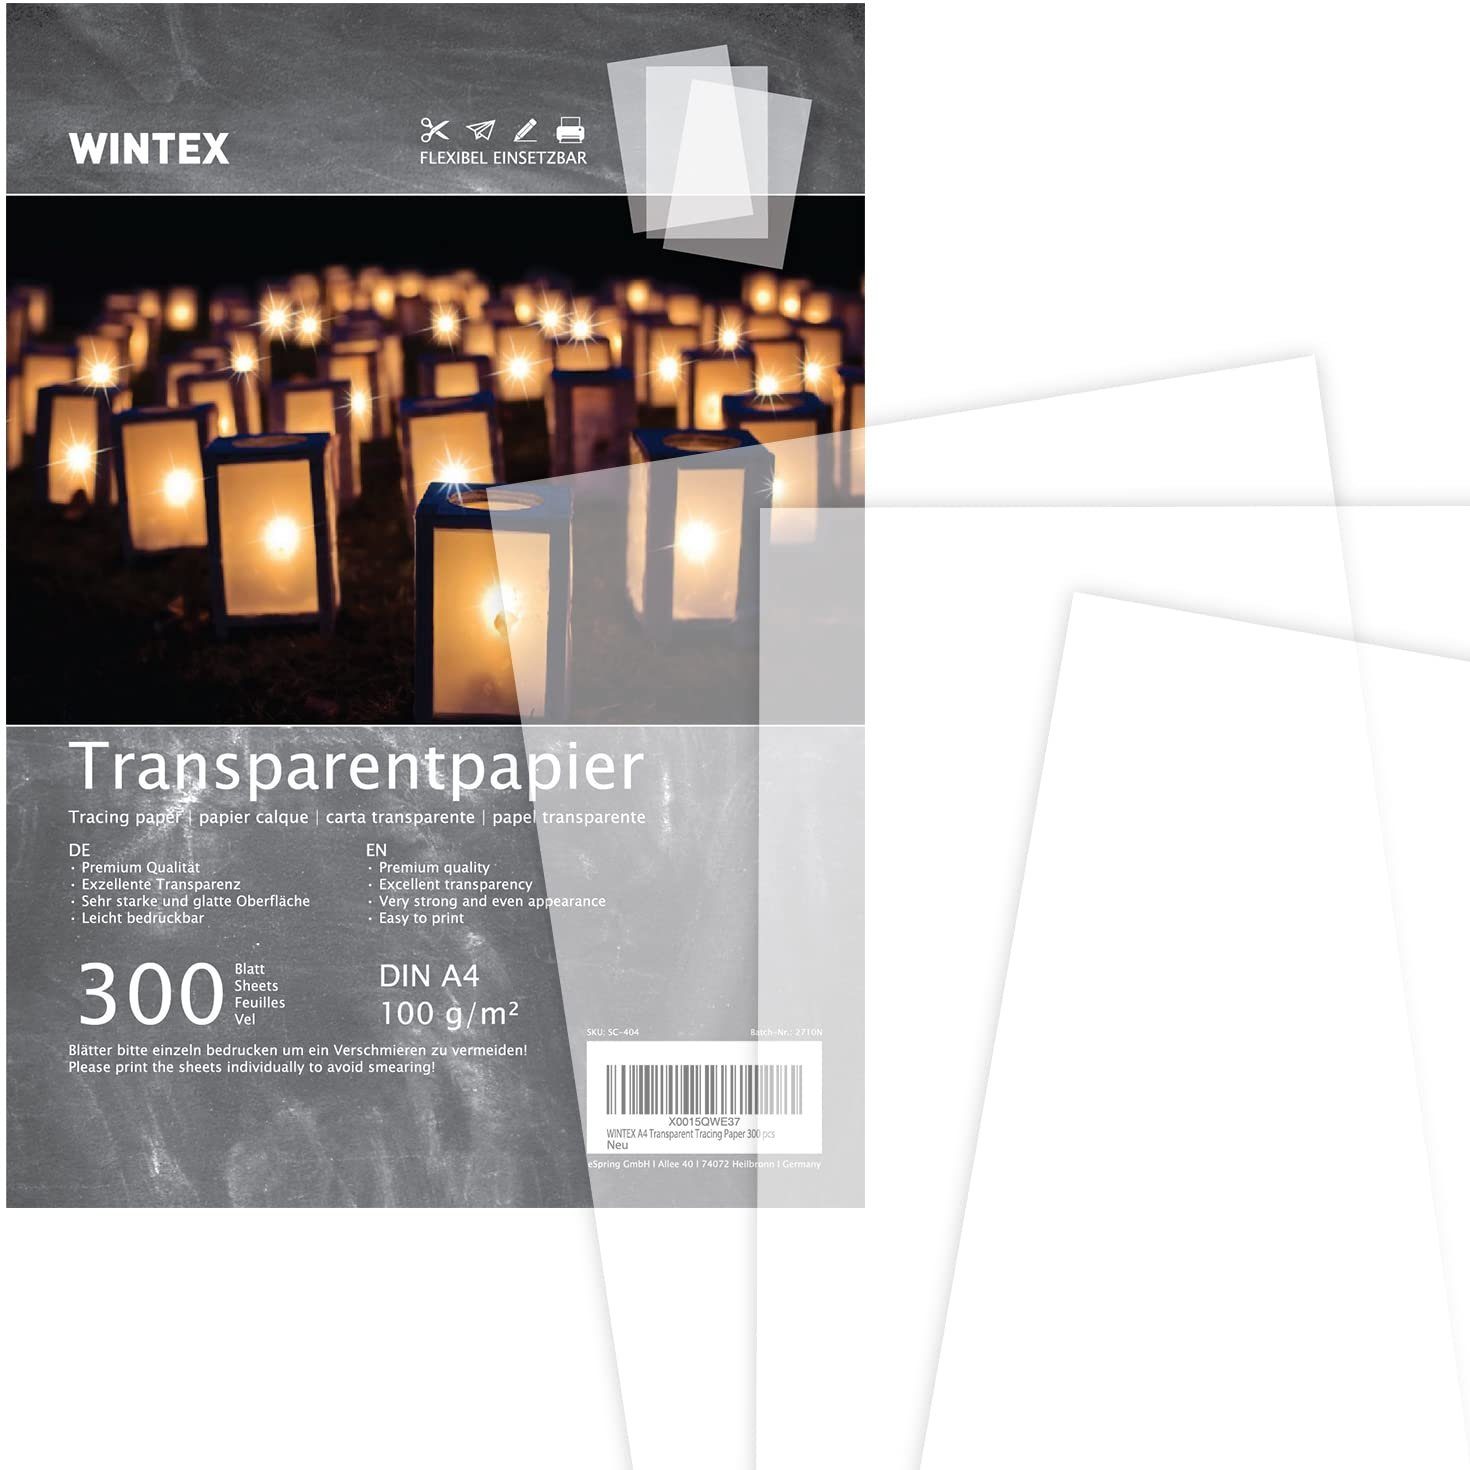 WINTEX Transparentpapier Transparentpapier DIN A4, 300 Blatt, weiß, 100 g/qm